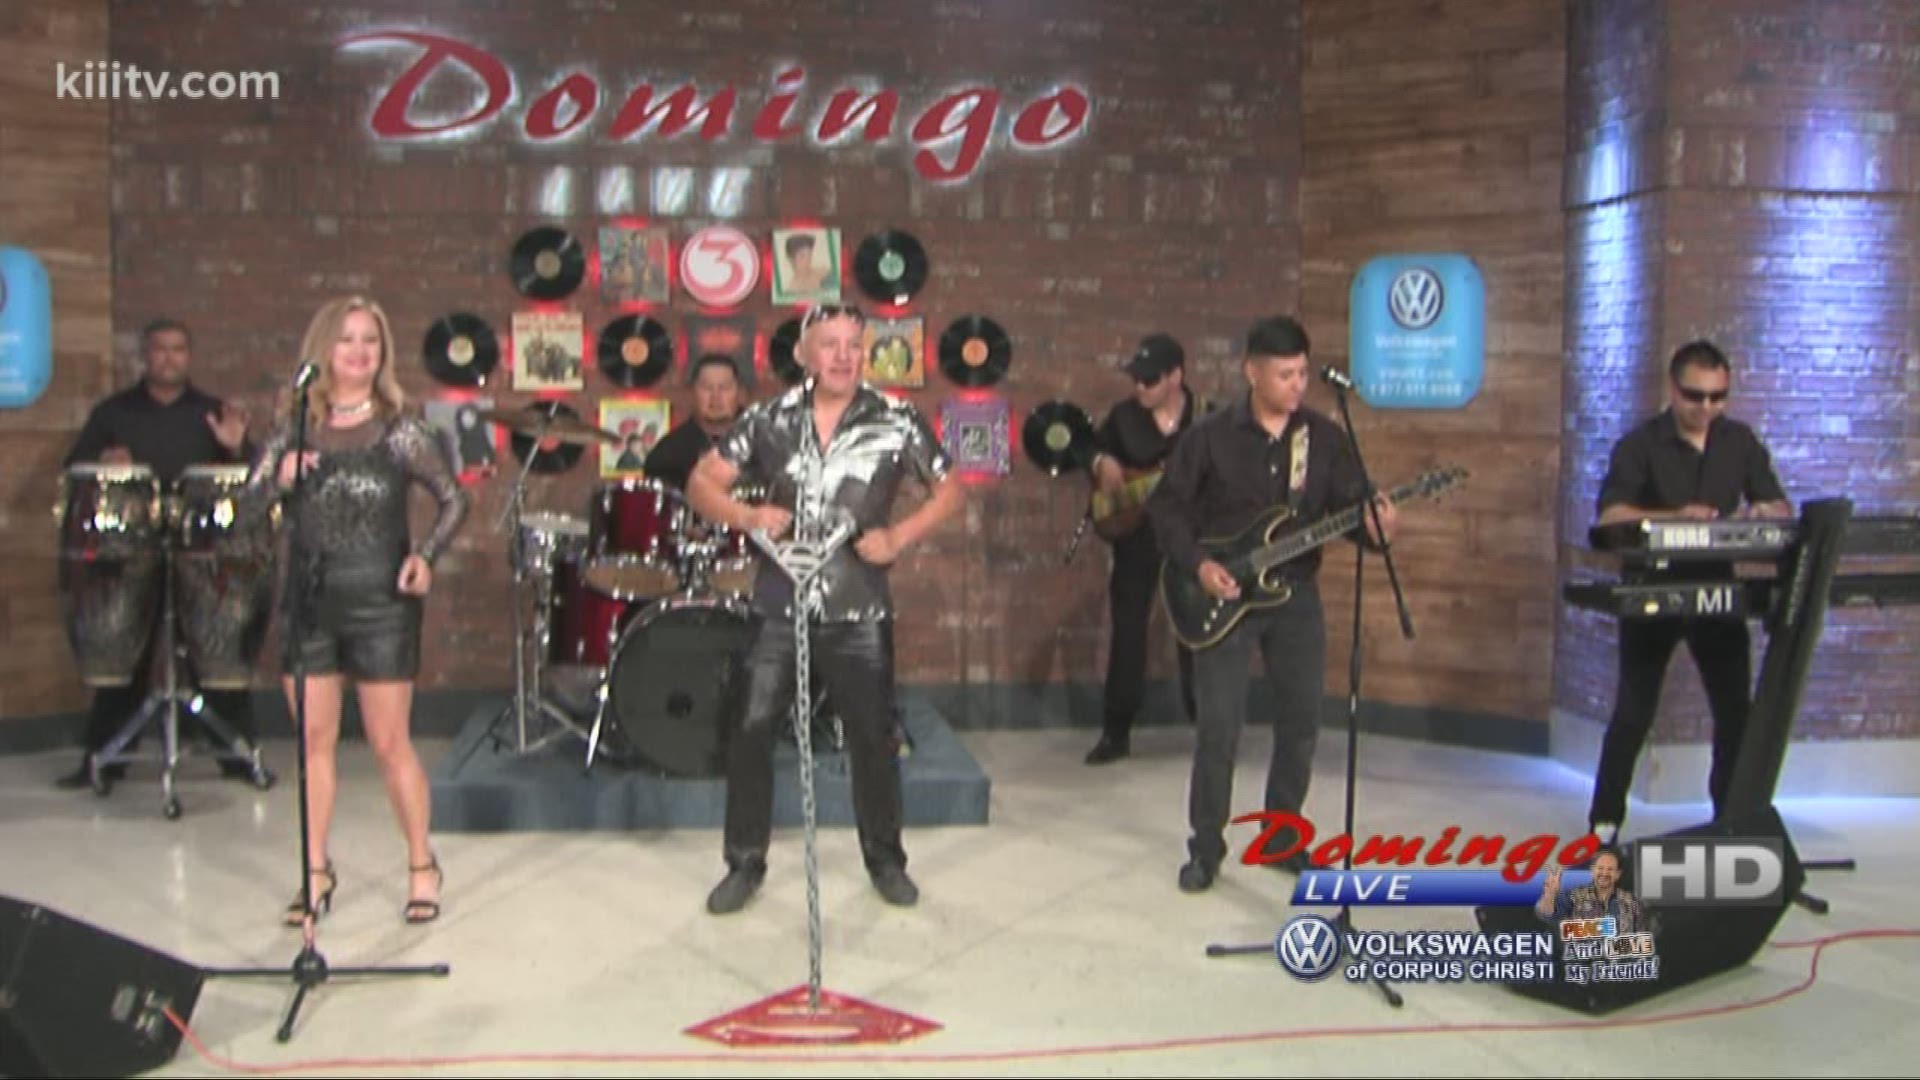 Super Sueno performing "Cumbia Contagiosa" on Domingo Live.